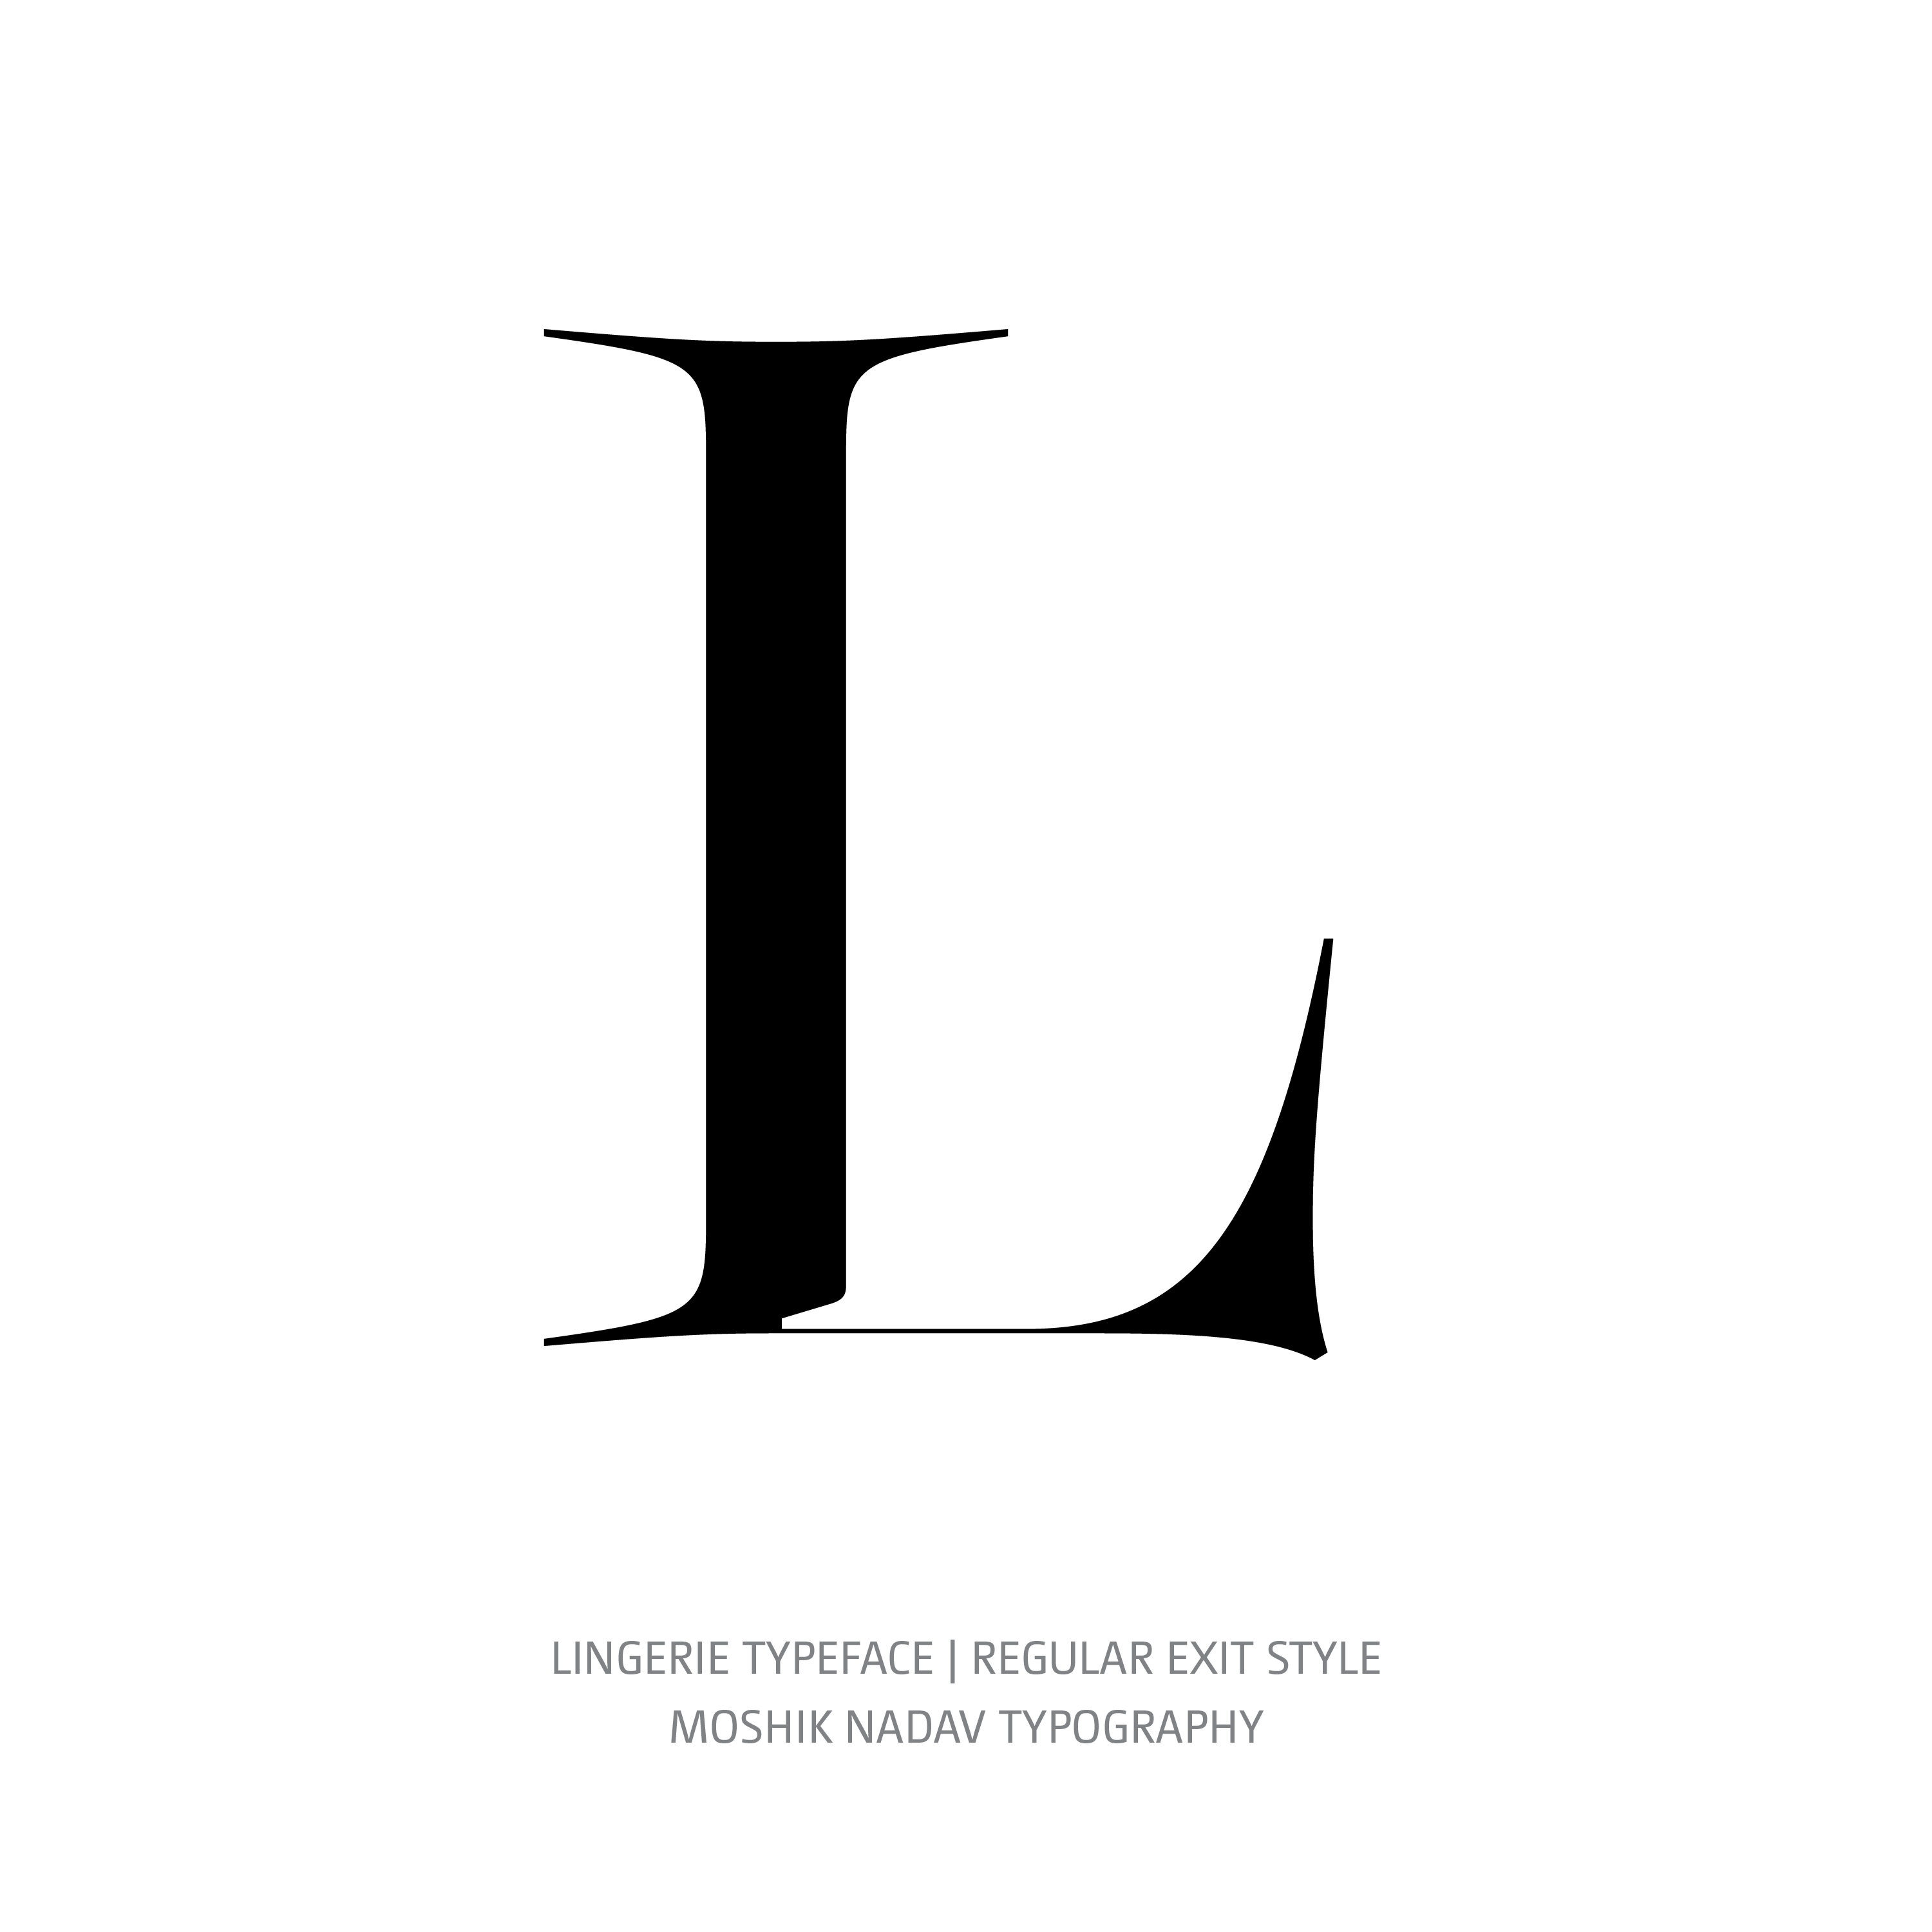 Lingerie Typeface Regular Exit L